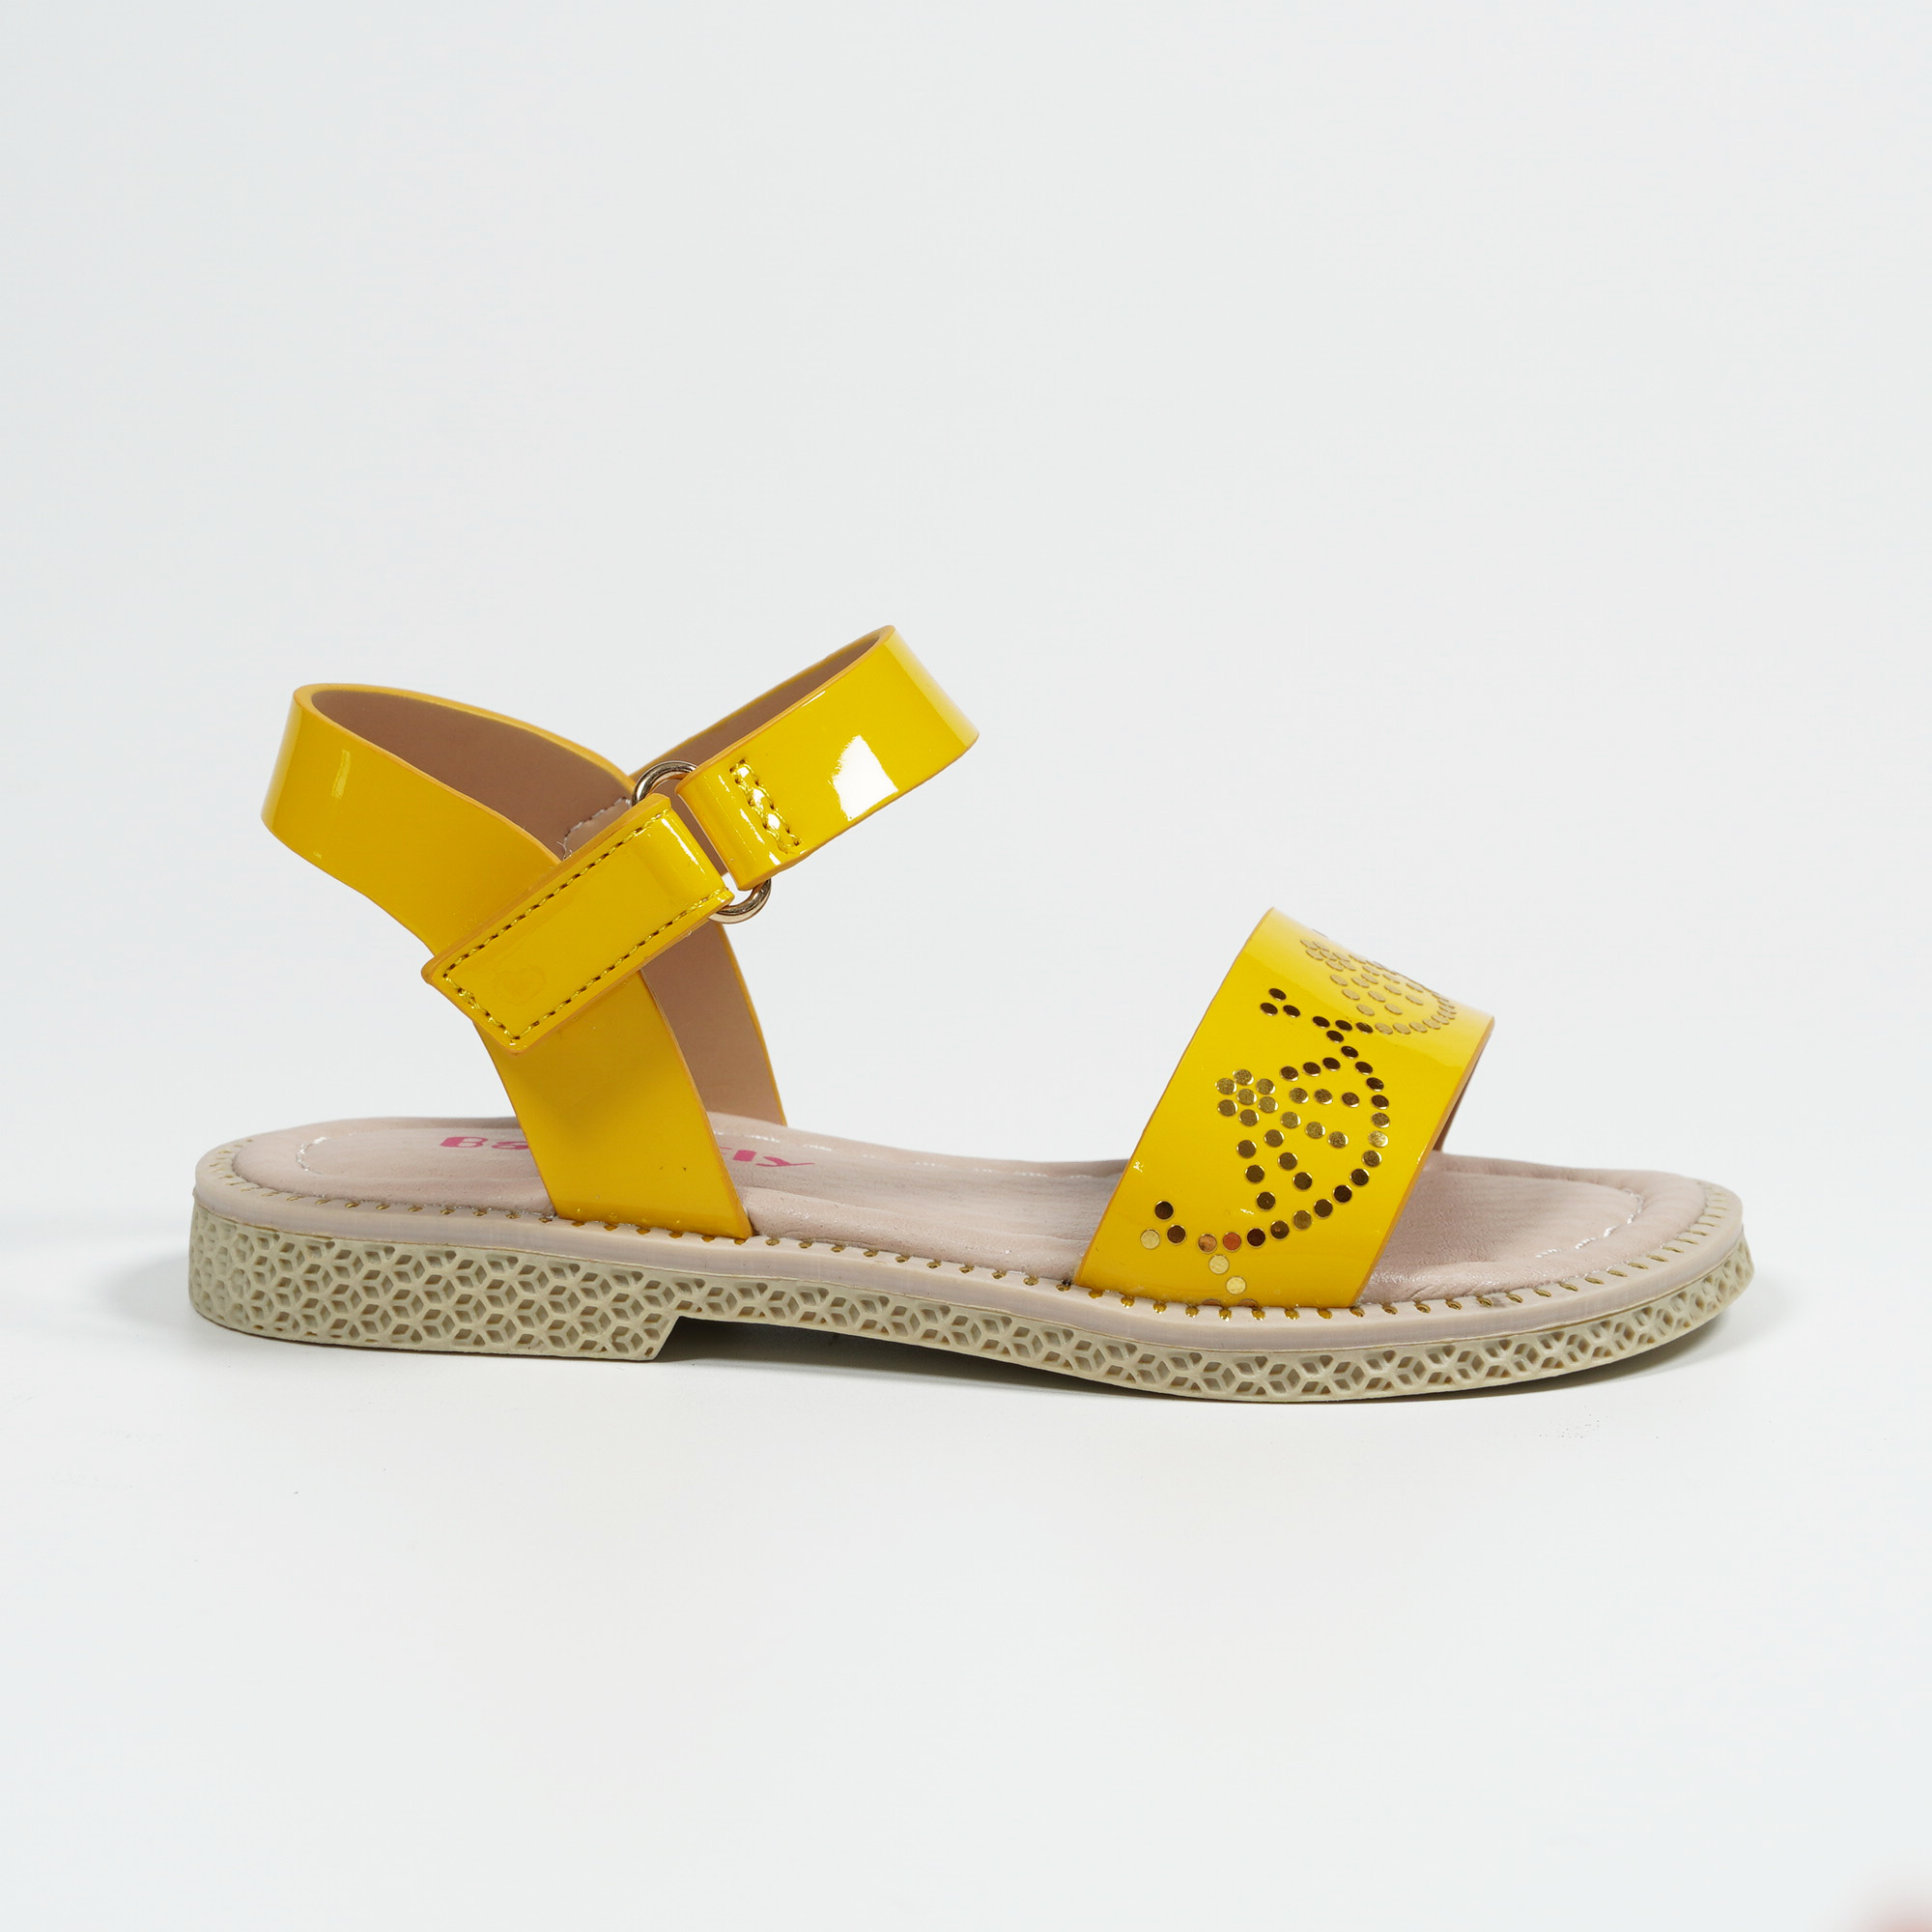 SOFT COMFORTABLE UNIQUE SANDALS DESIGNS 2020 || LATEST SANDALS NEW DES... | Latest  sandal, Designer sandals, Sandals